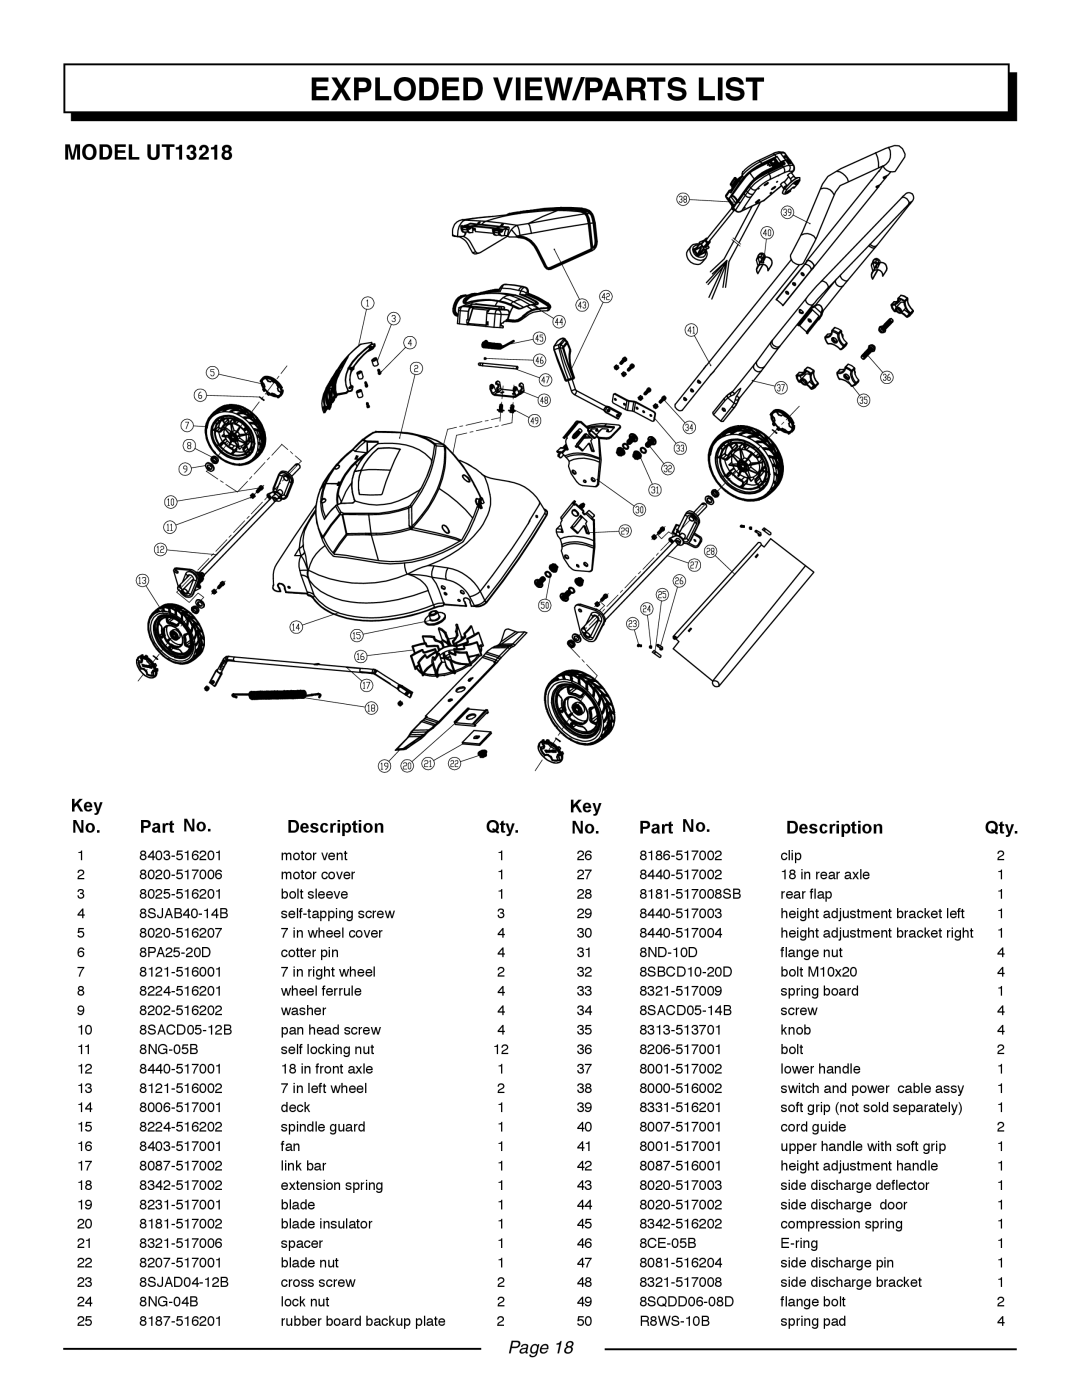 Homelite UT13220 manual Exploded View/Parts List, MODEL UT13218, Description, Page 